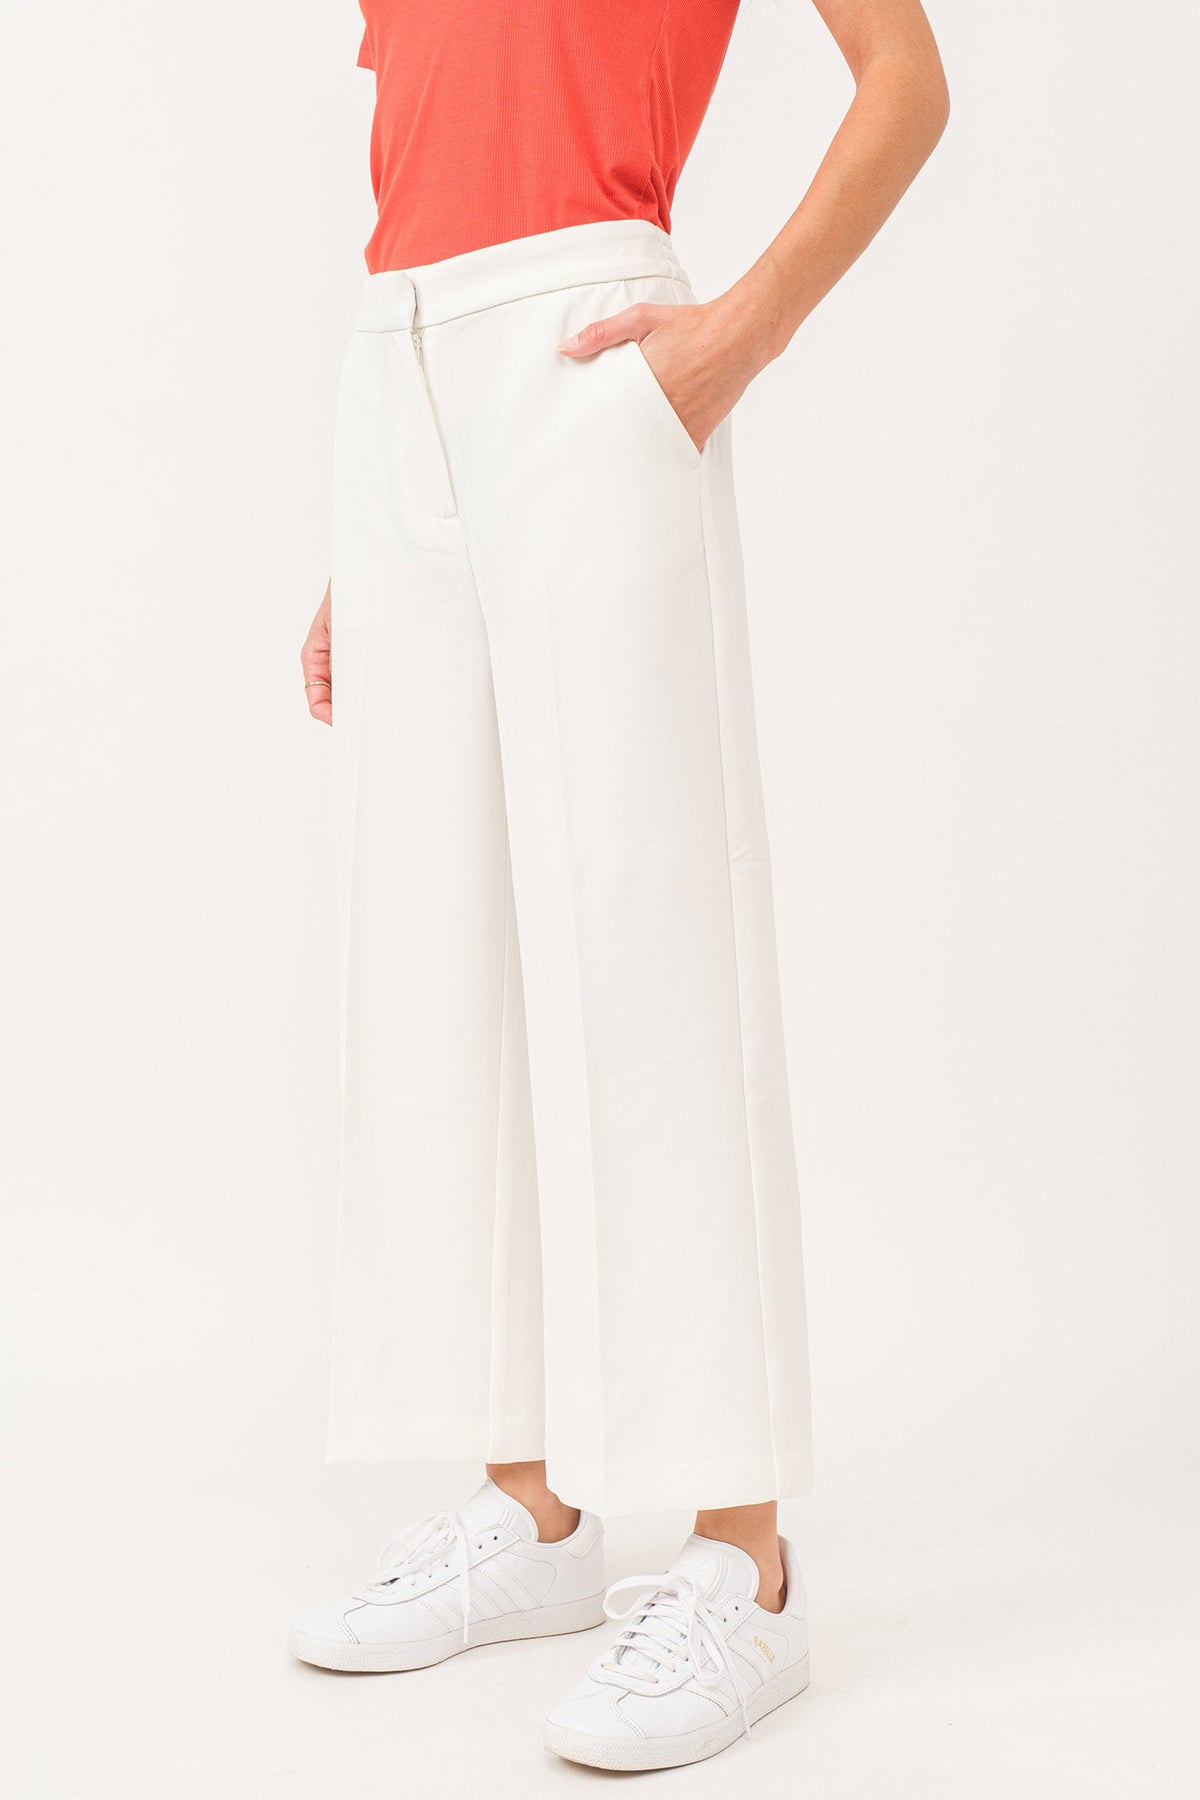 denali-high-rise-wide-leg-cropped-pants-white